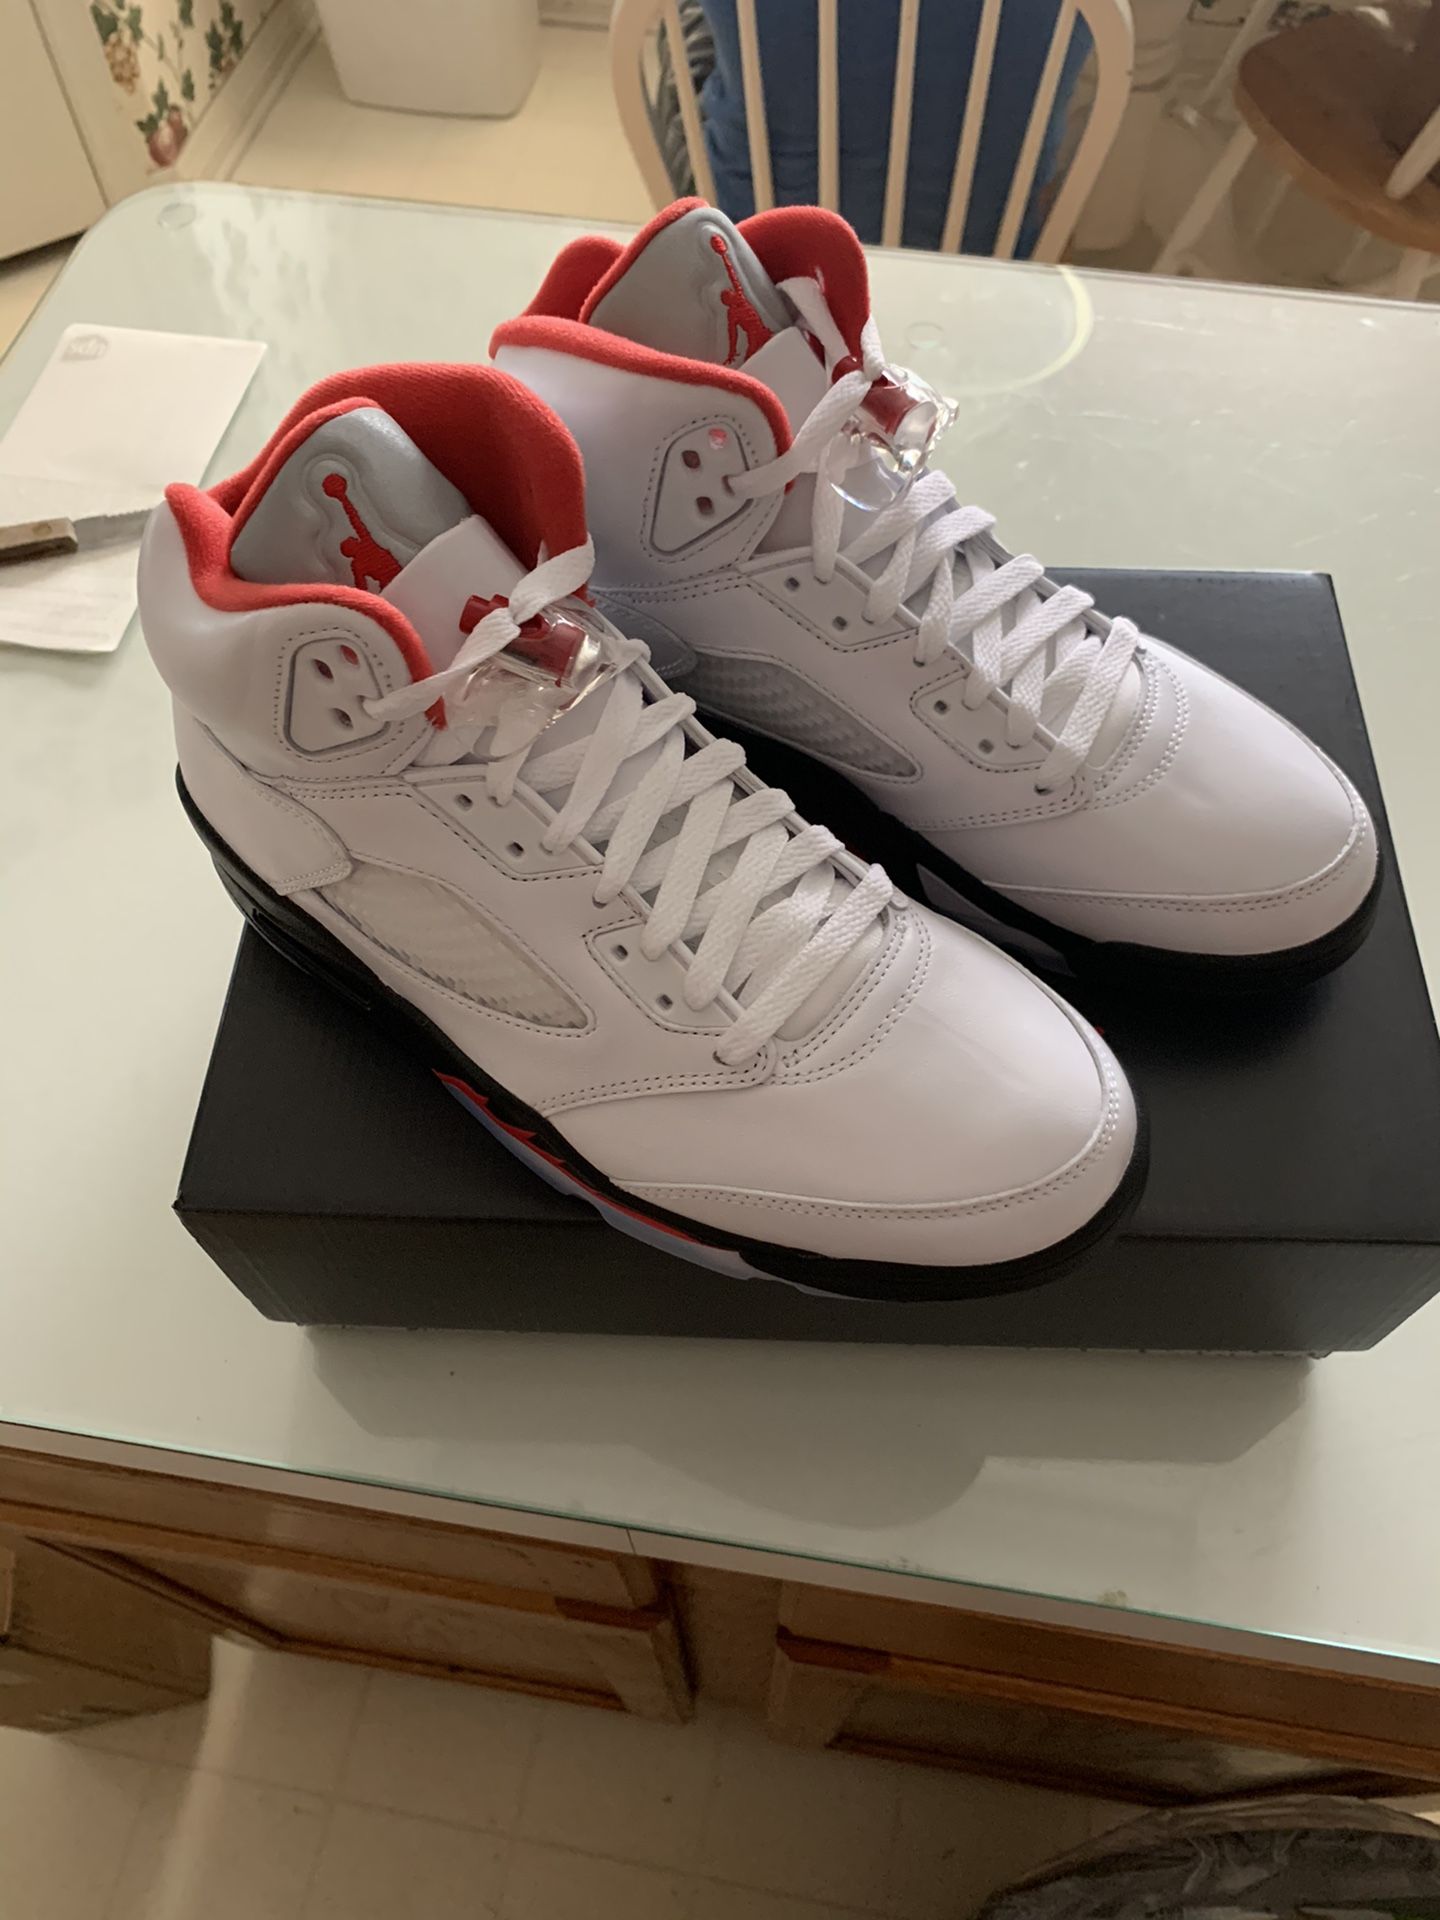 Jordan 5 Fire Red Size 8